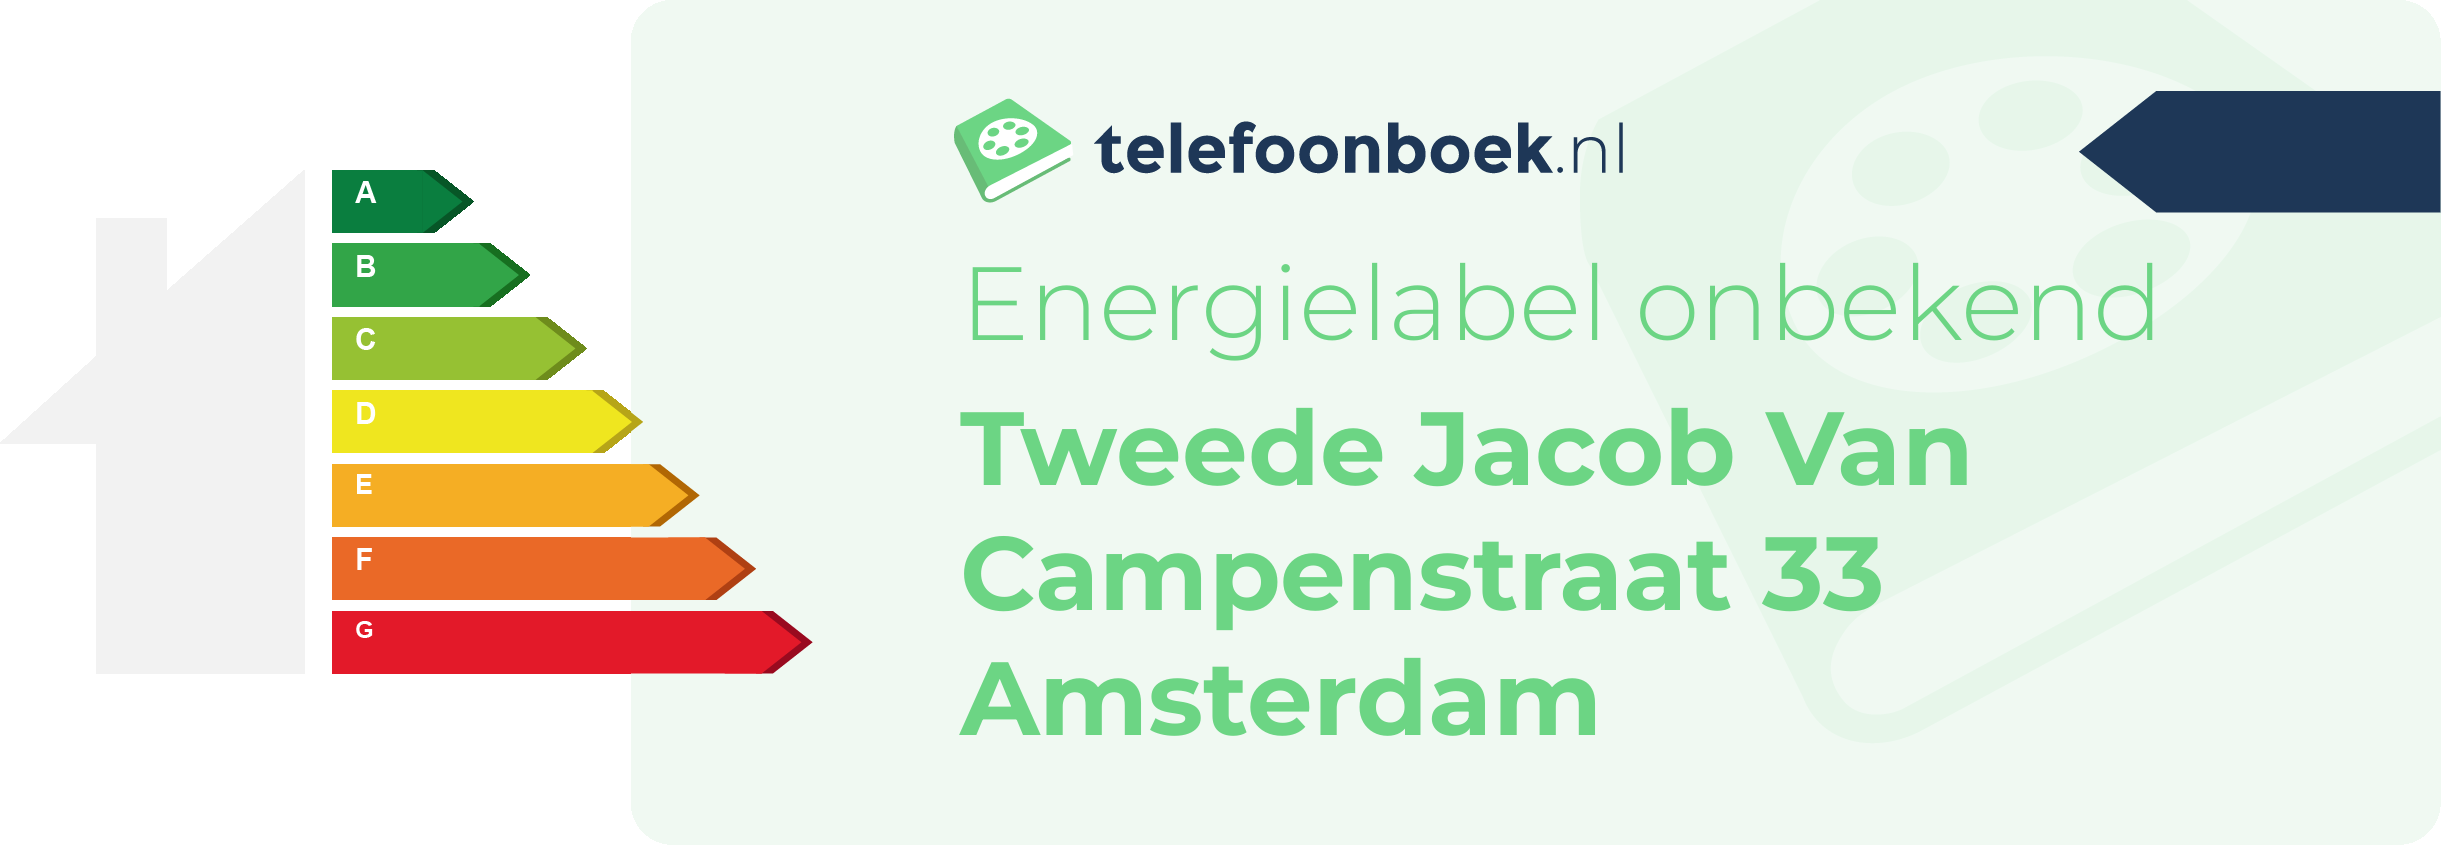 Energielabel Tweede Jacob Van Campenstraat 33 Amsterdam